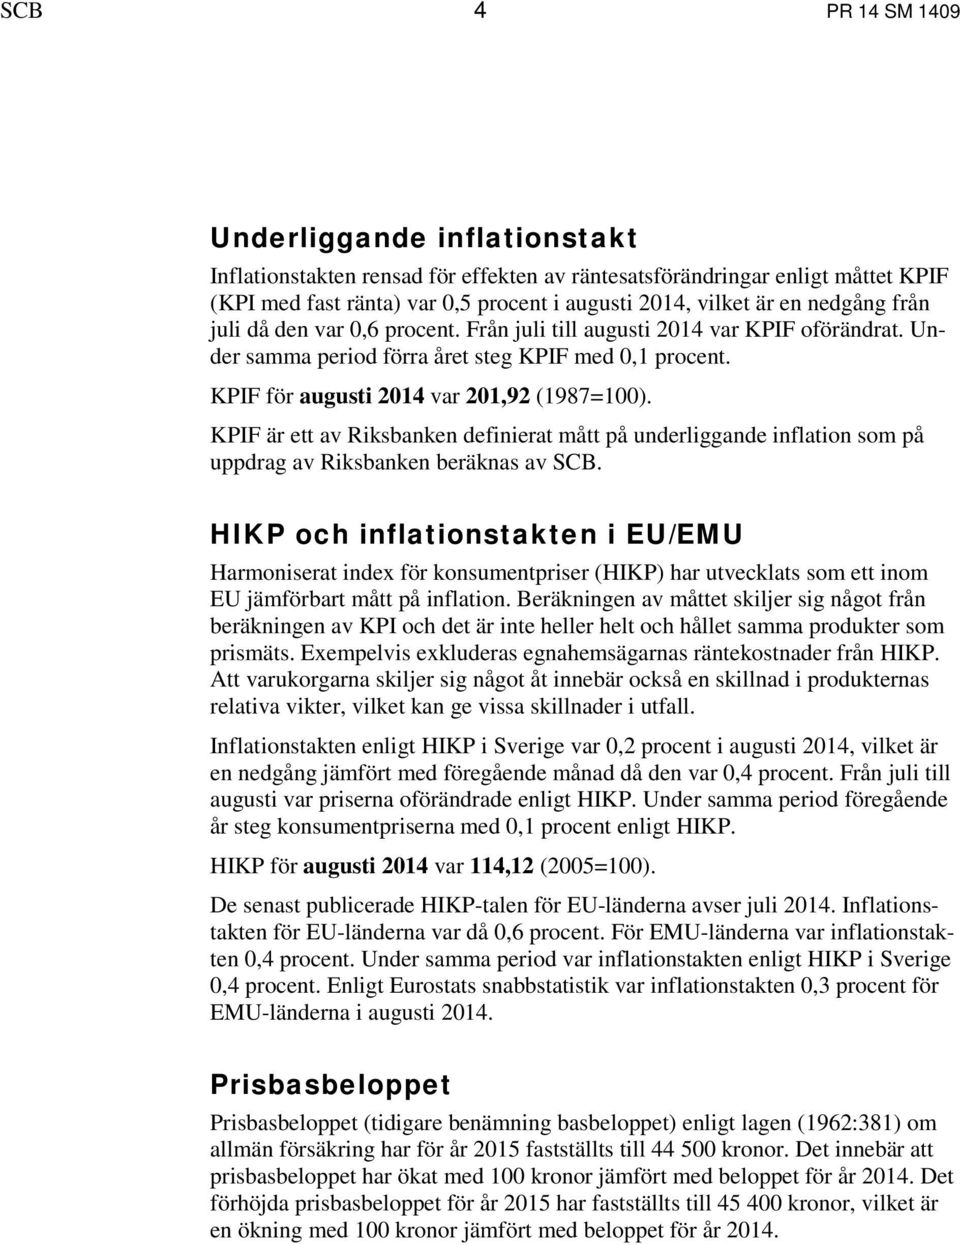 KPIF är ett av Riksbanken definierat mått på underliggande inflation som på uppdrag av Riksbanken beräknas av SCB.